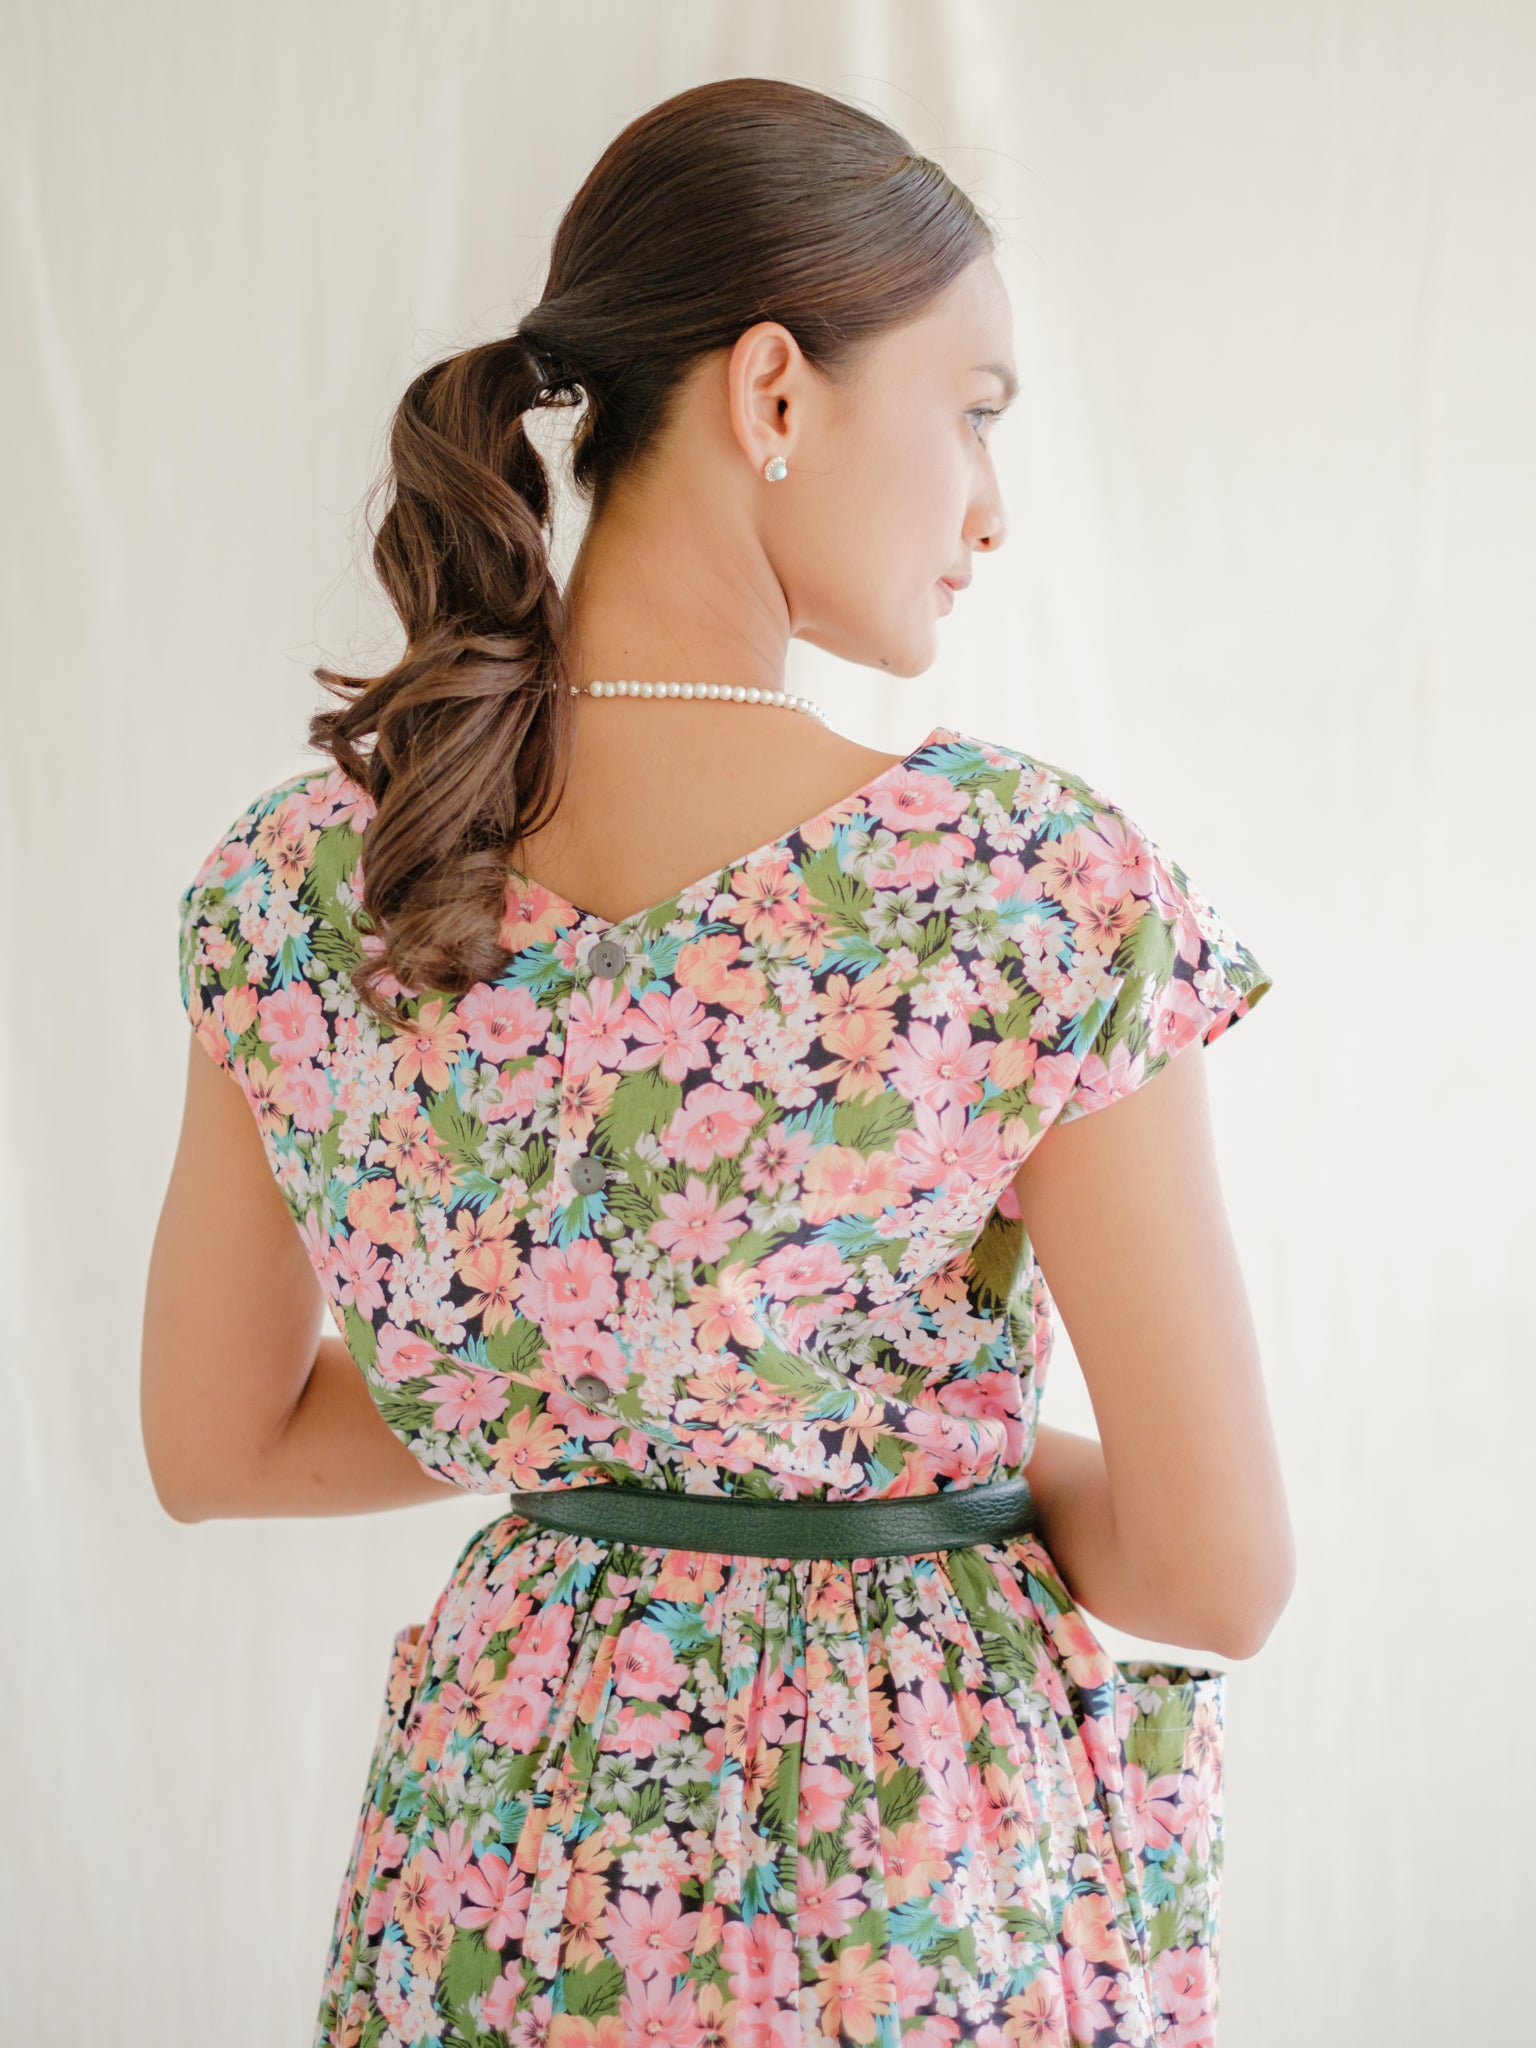 Floral cotton vintage dress